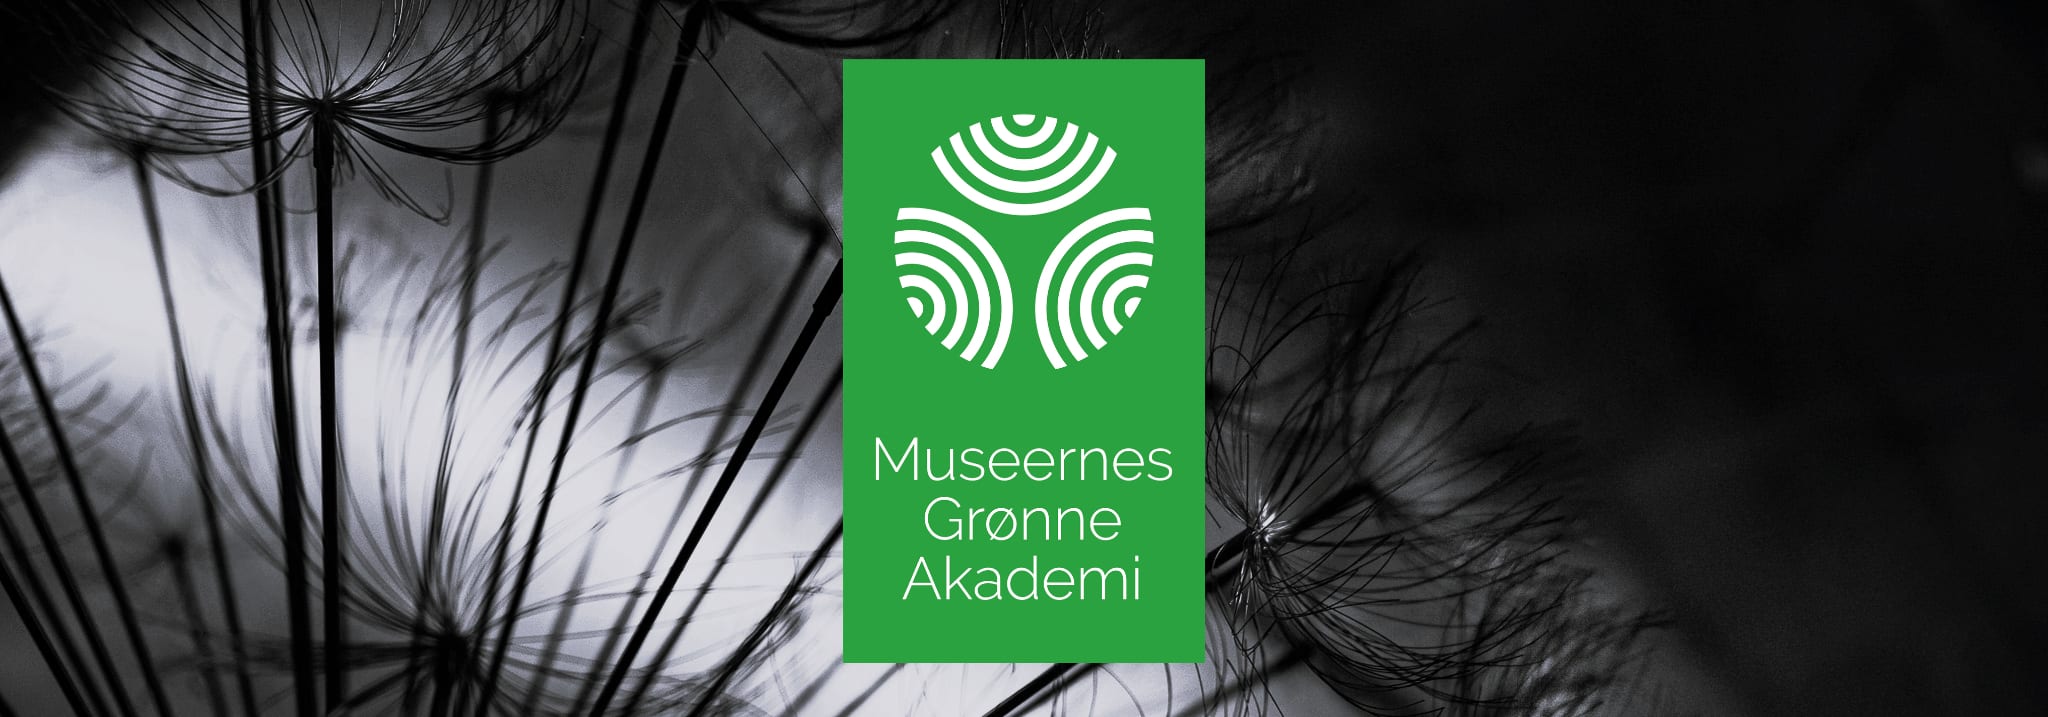 Museernes Grønne Akademi